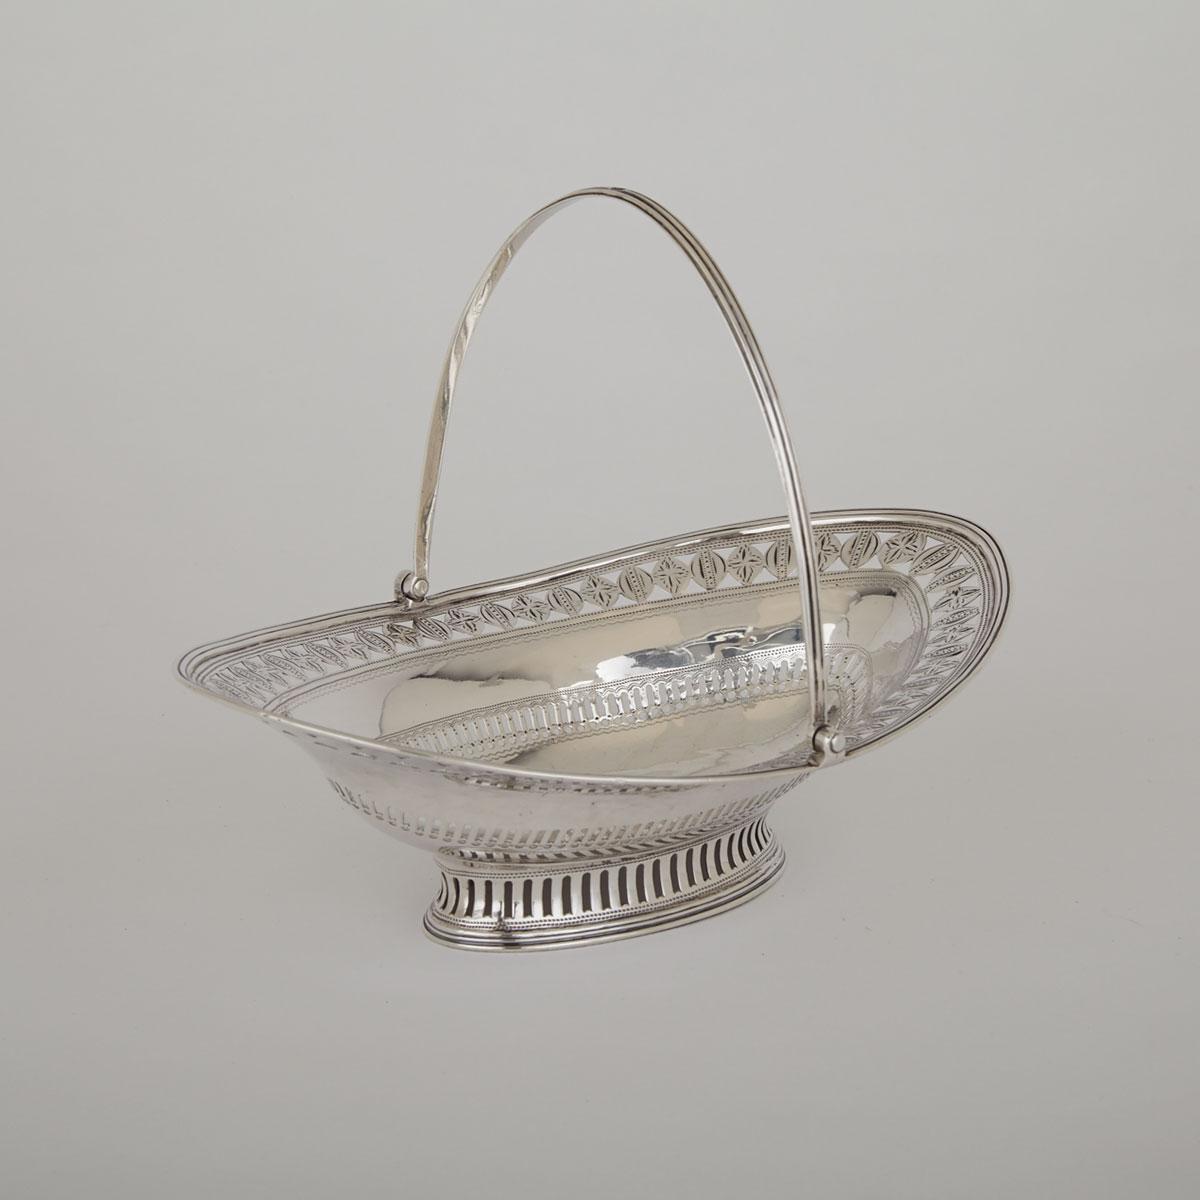 George III Silver Oval Sweetmeat Basket, Joseph Scammell, London, 1792